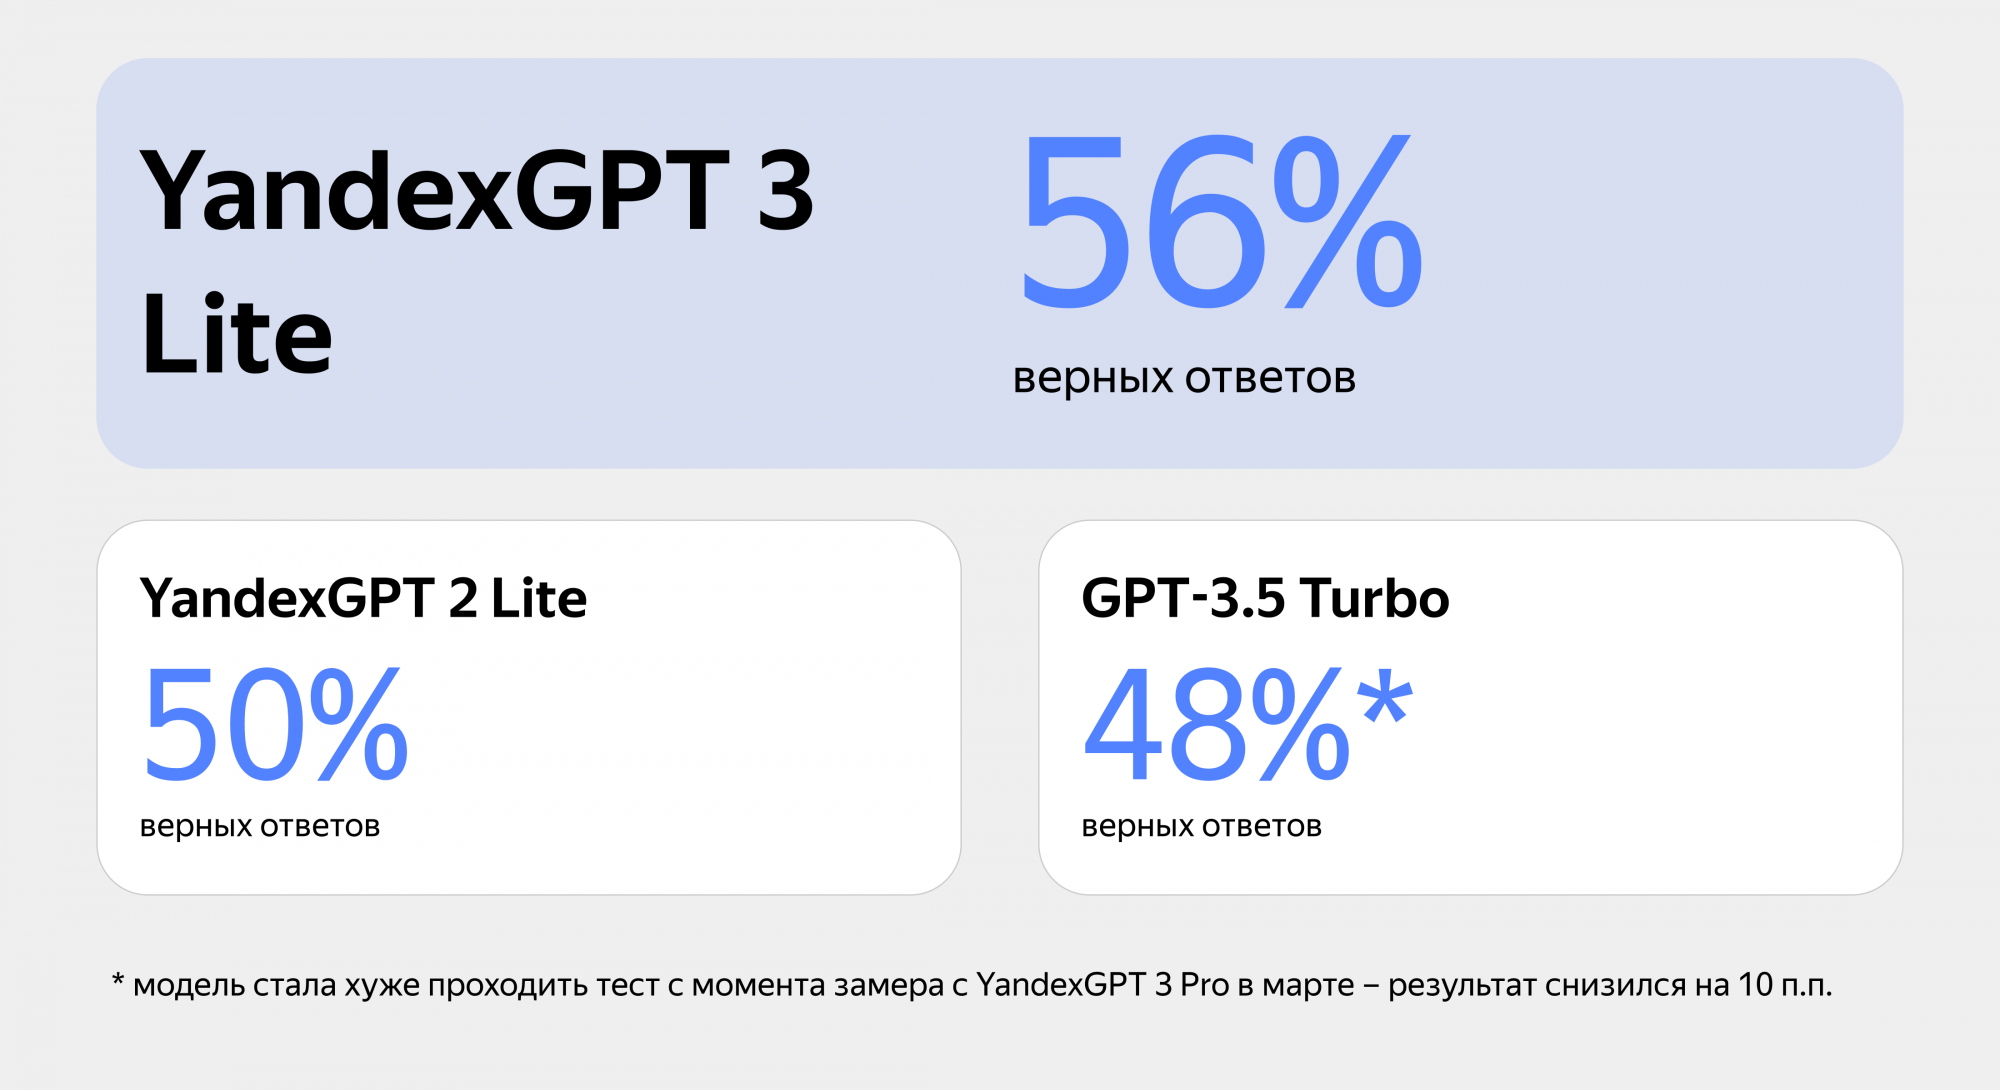 YandexGPT 3 Lite быстрее и точнее отвечает на вопросы